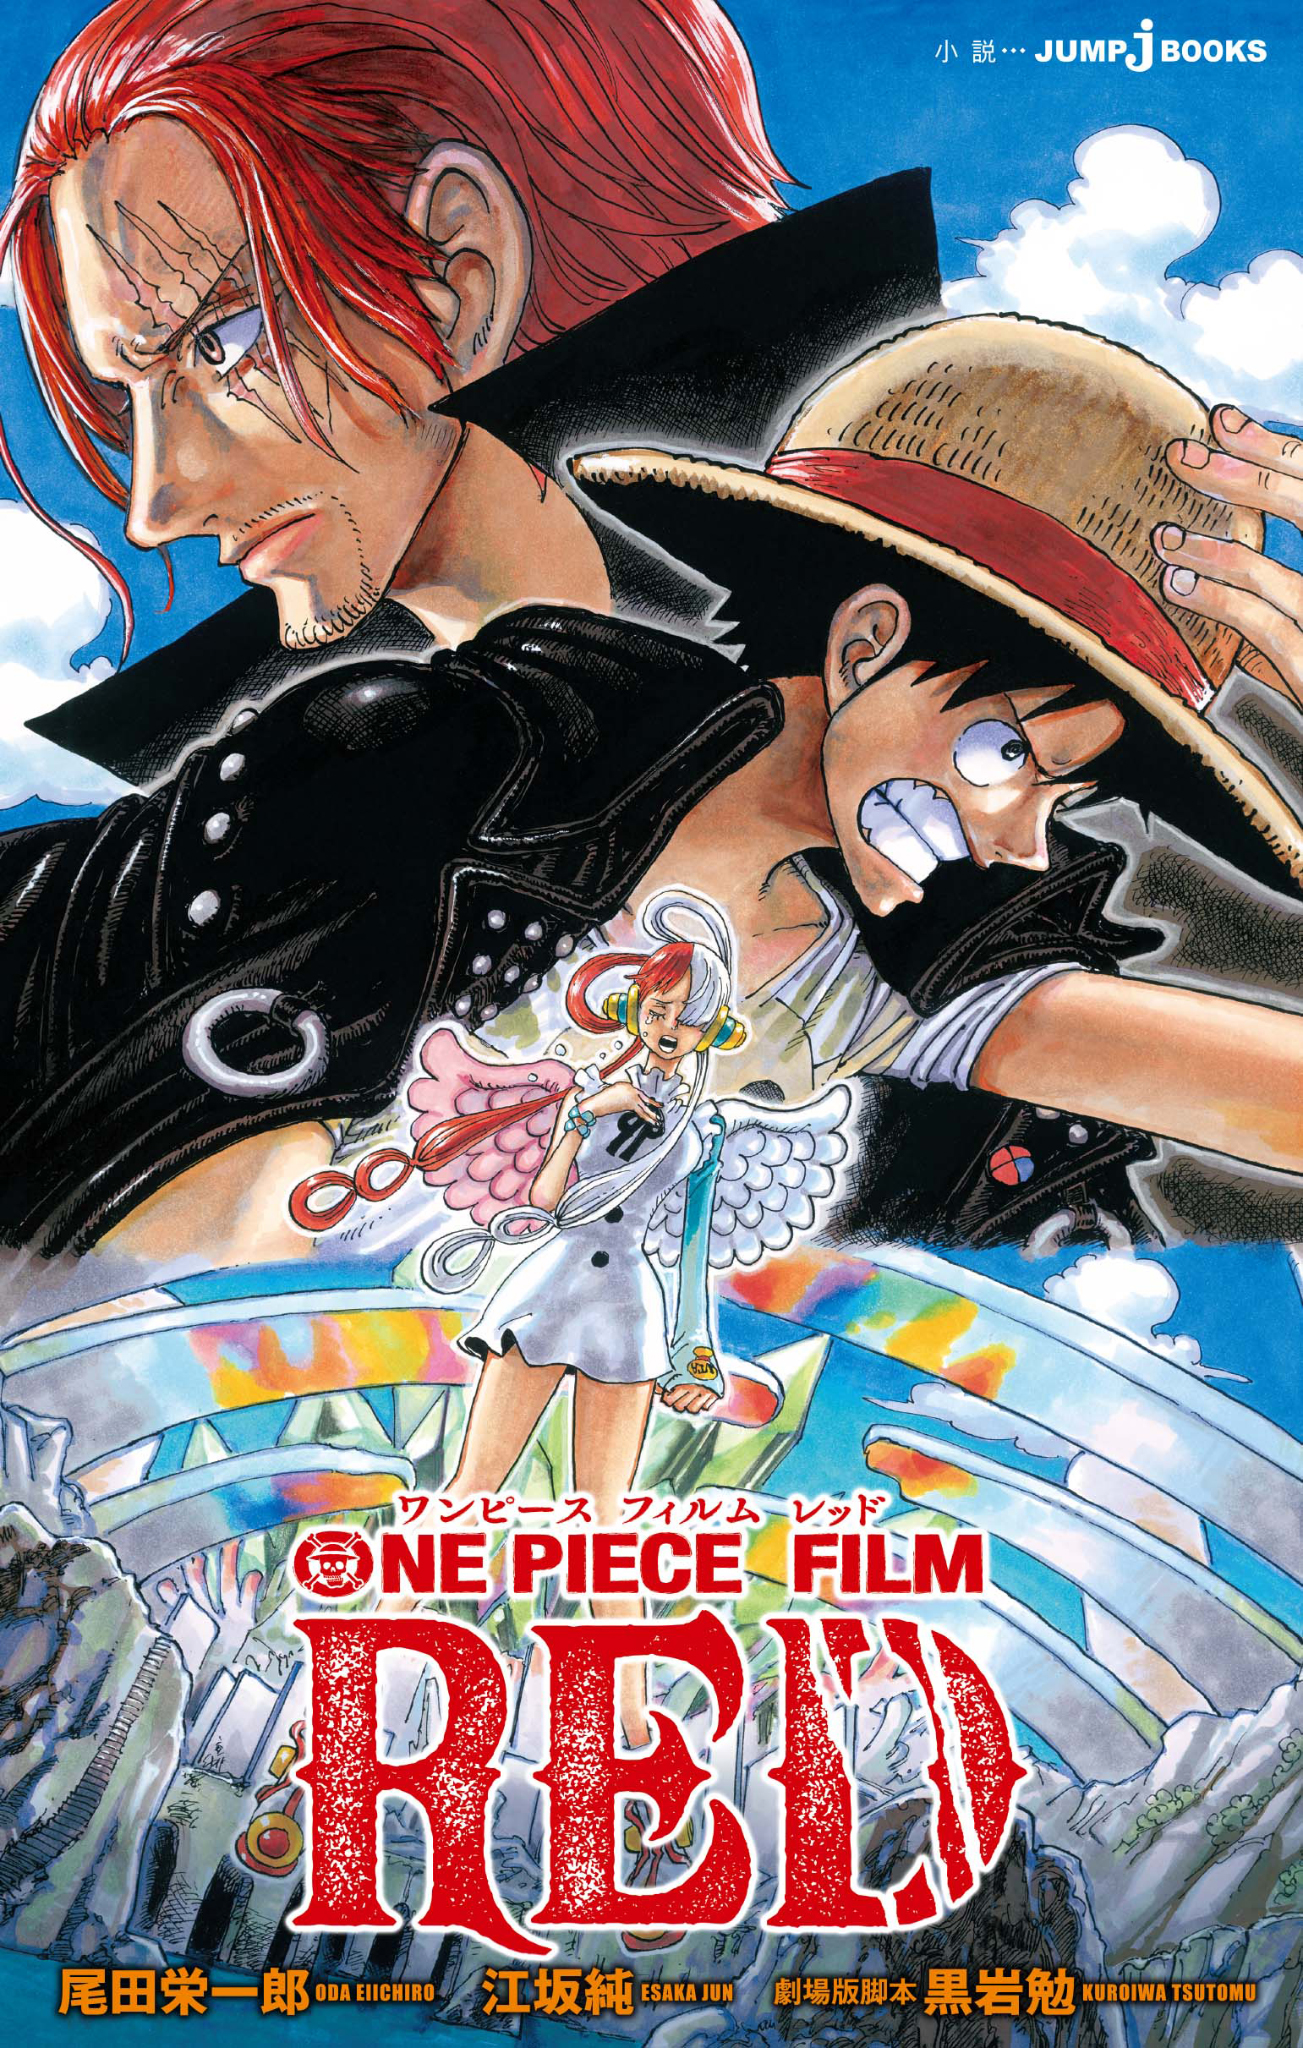 ONE PIECE FILM RED(ラノベ) - 電子書籍 | U-NEXT 初回600円分無料